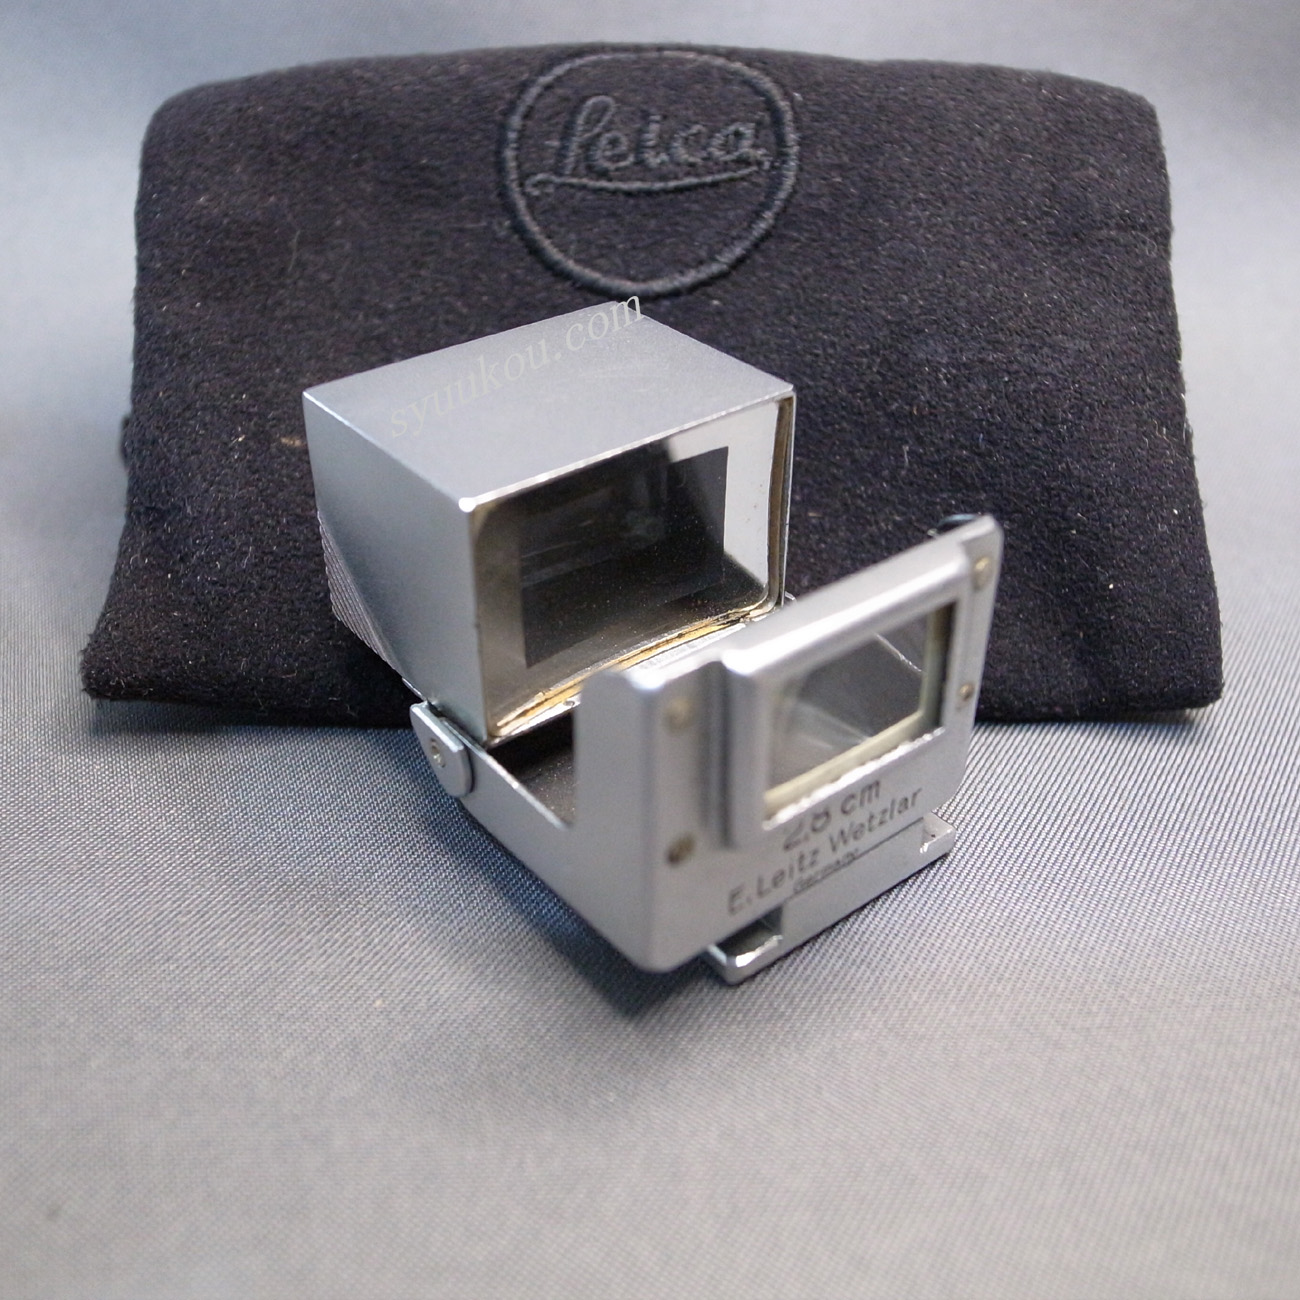 2.8cm 折り畳み式ファインダー SUOOQ | LEICA | カメラ | 秀光